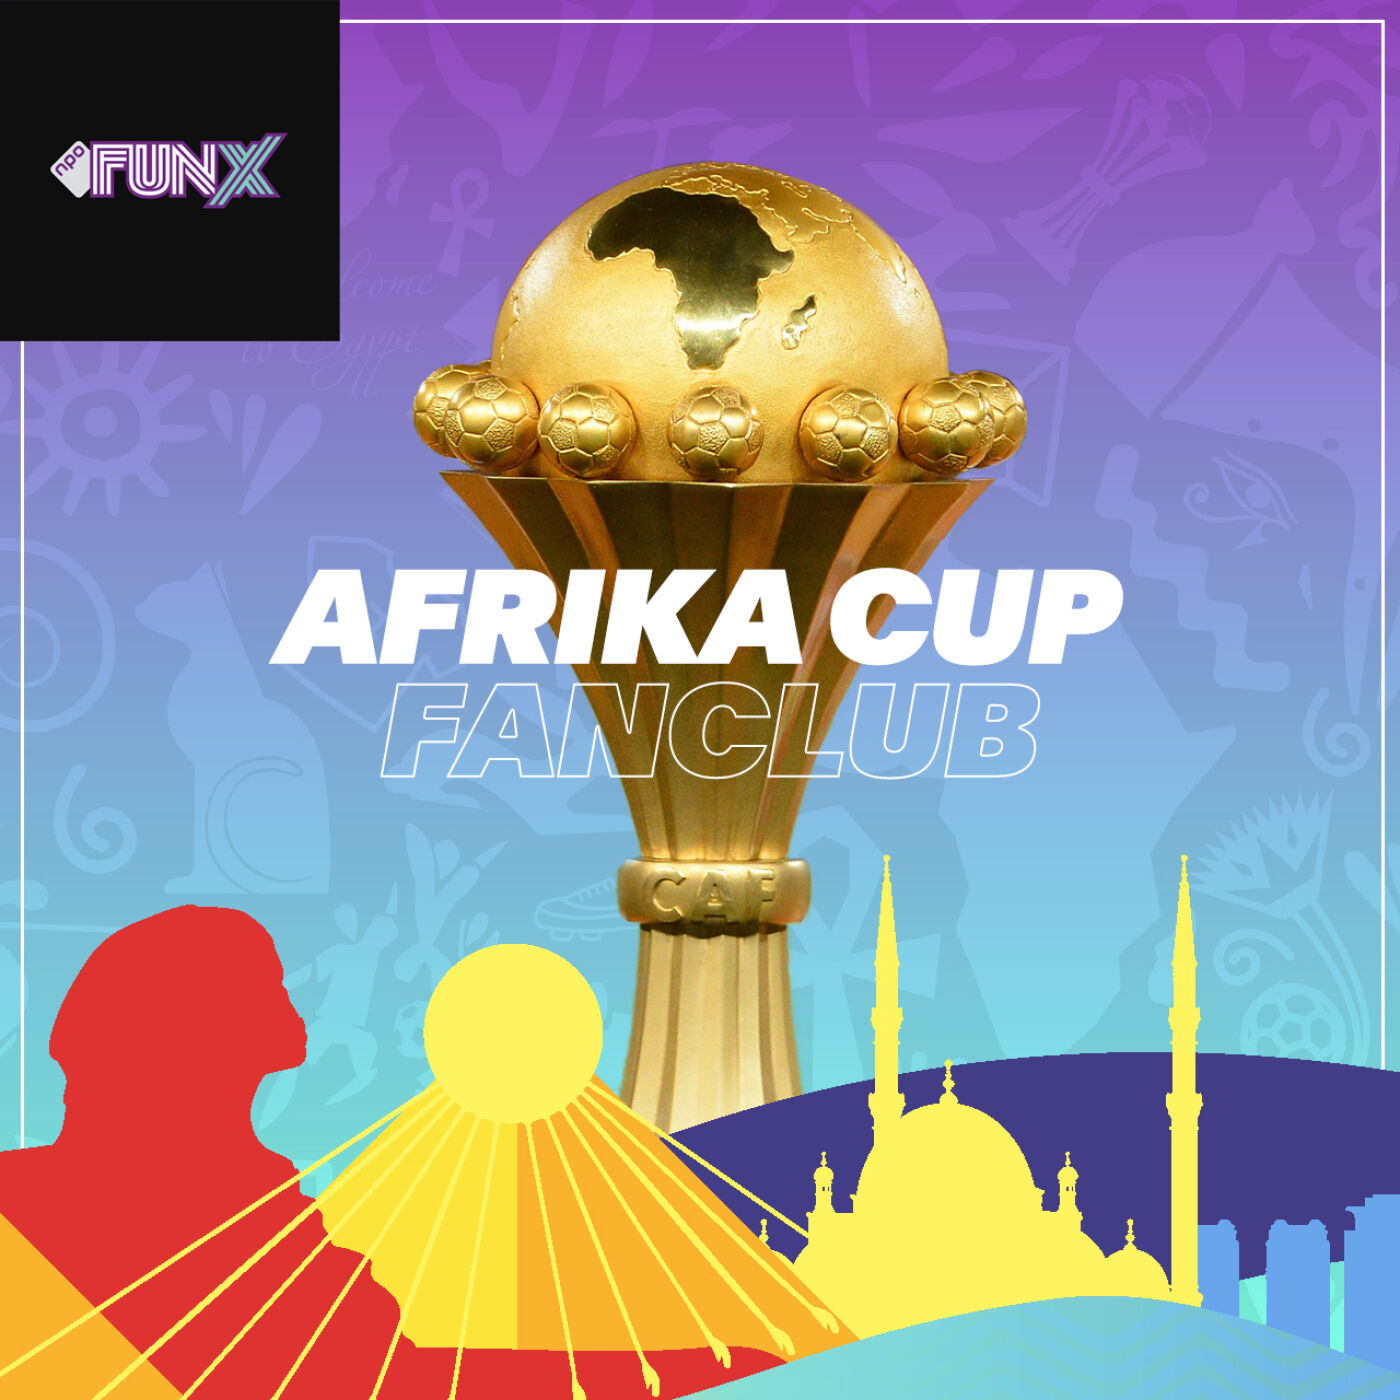 AFRIKA CUP FANCLUB logo